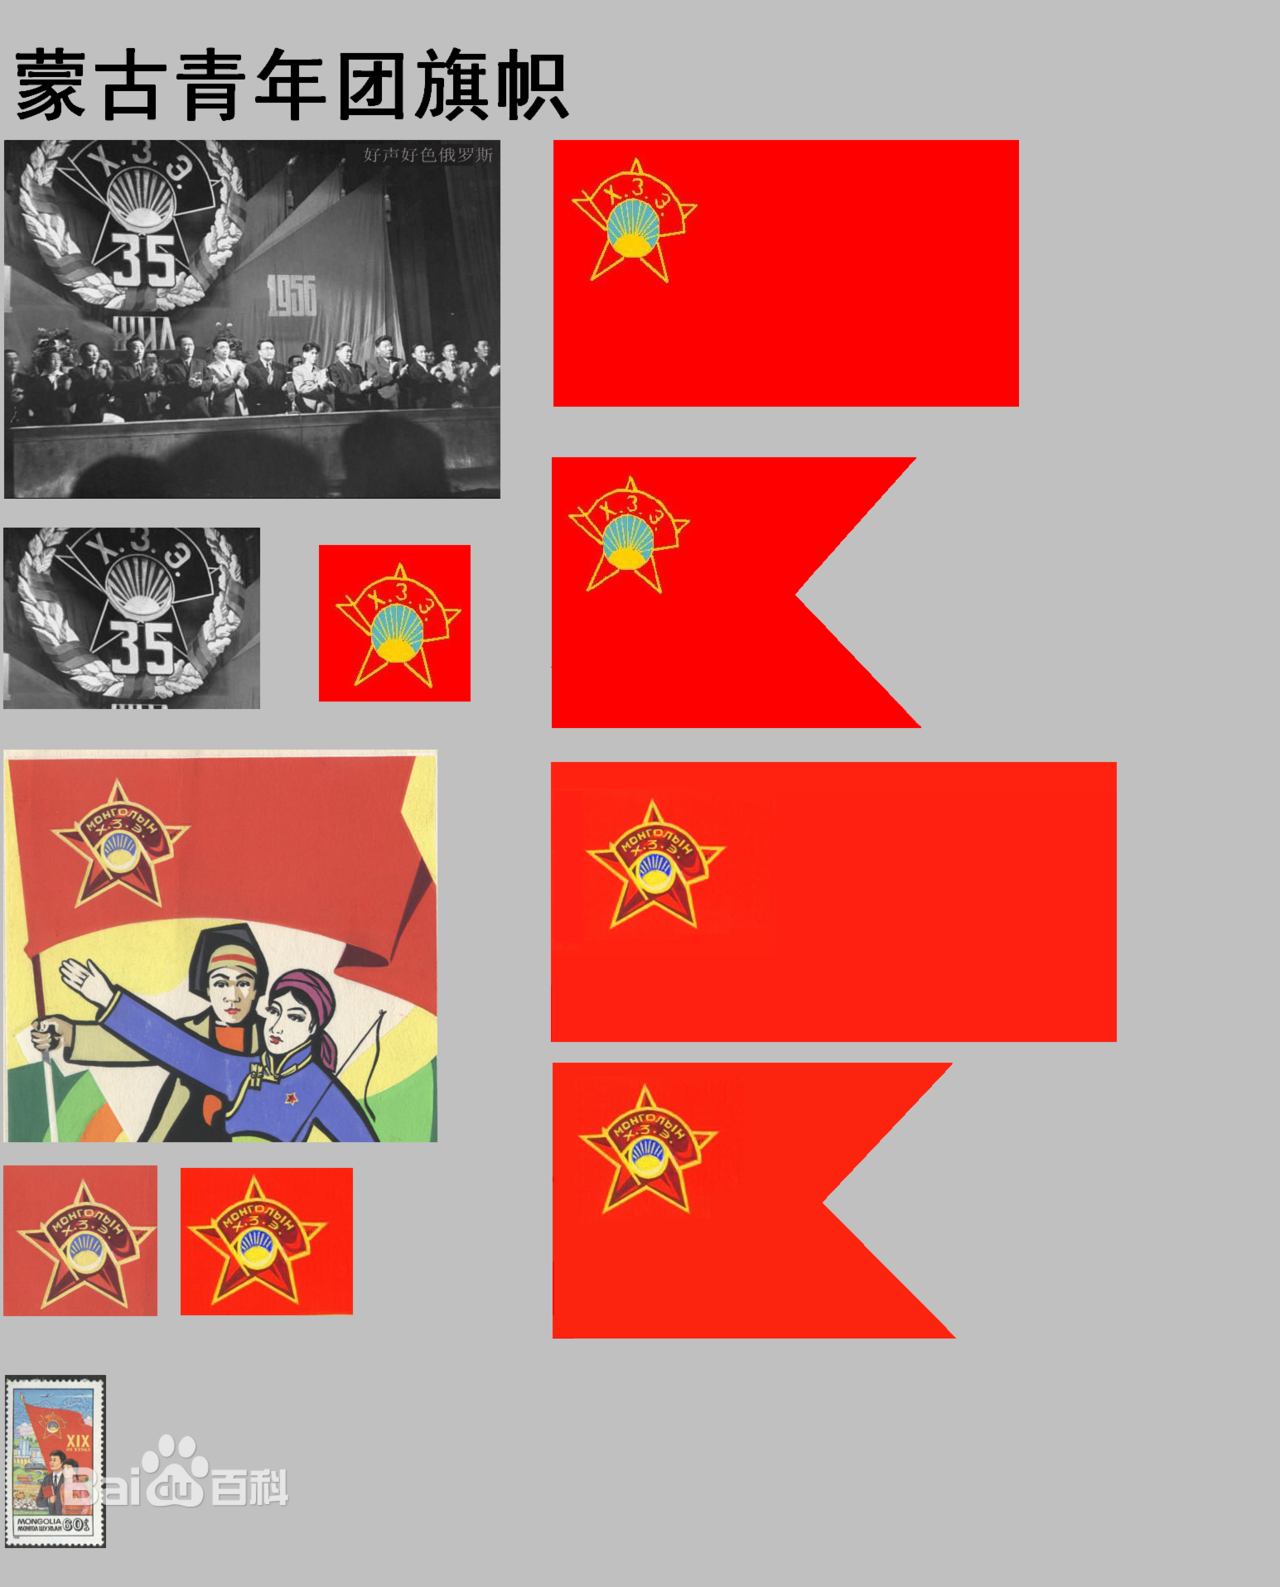 蒙古革命青年團旗幟